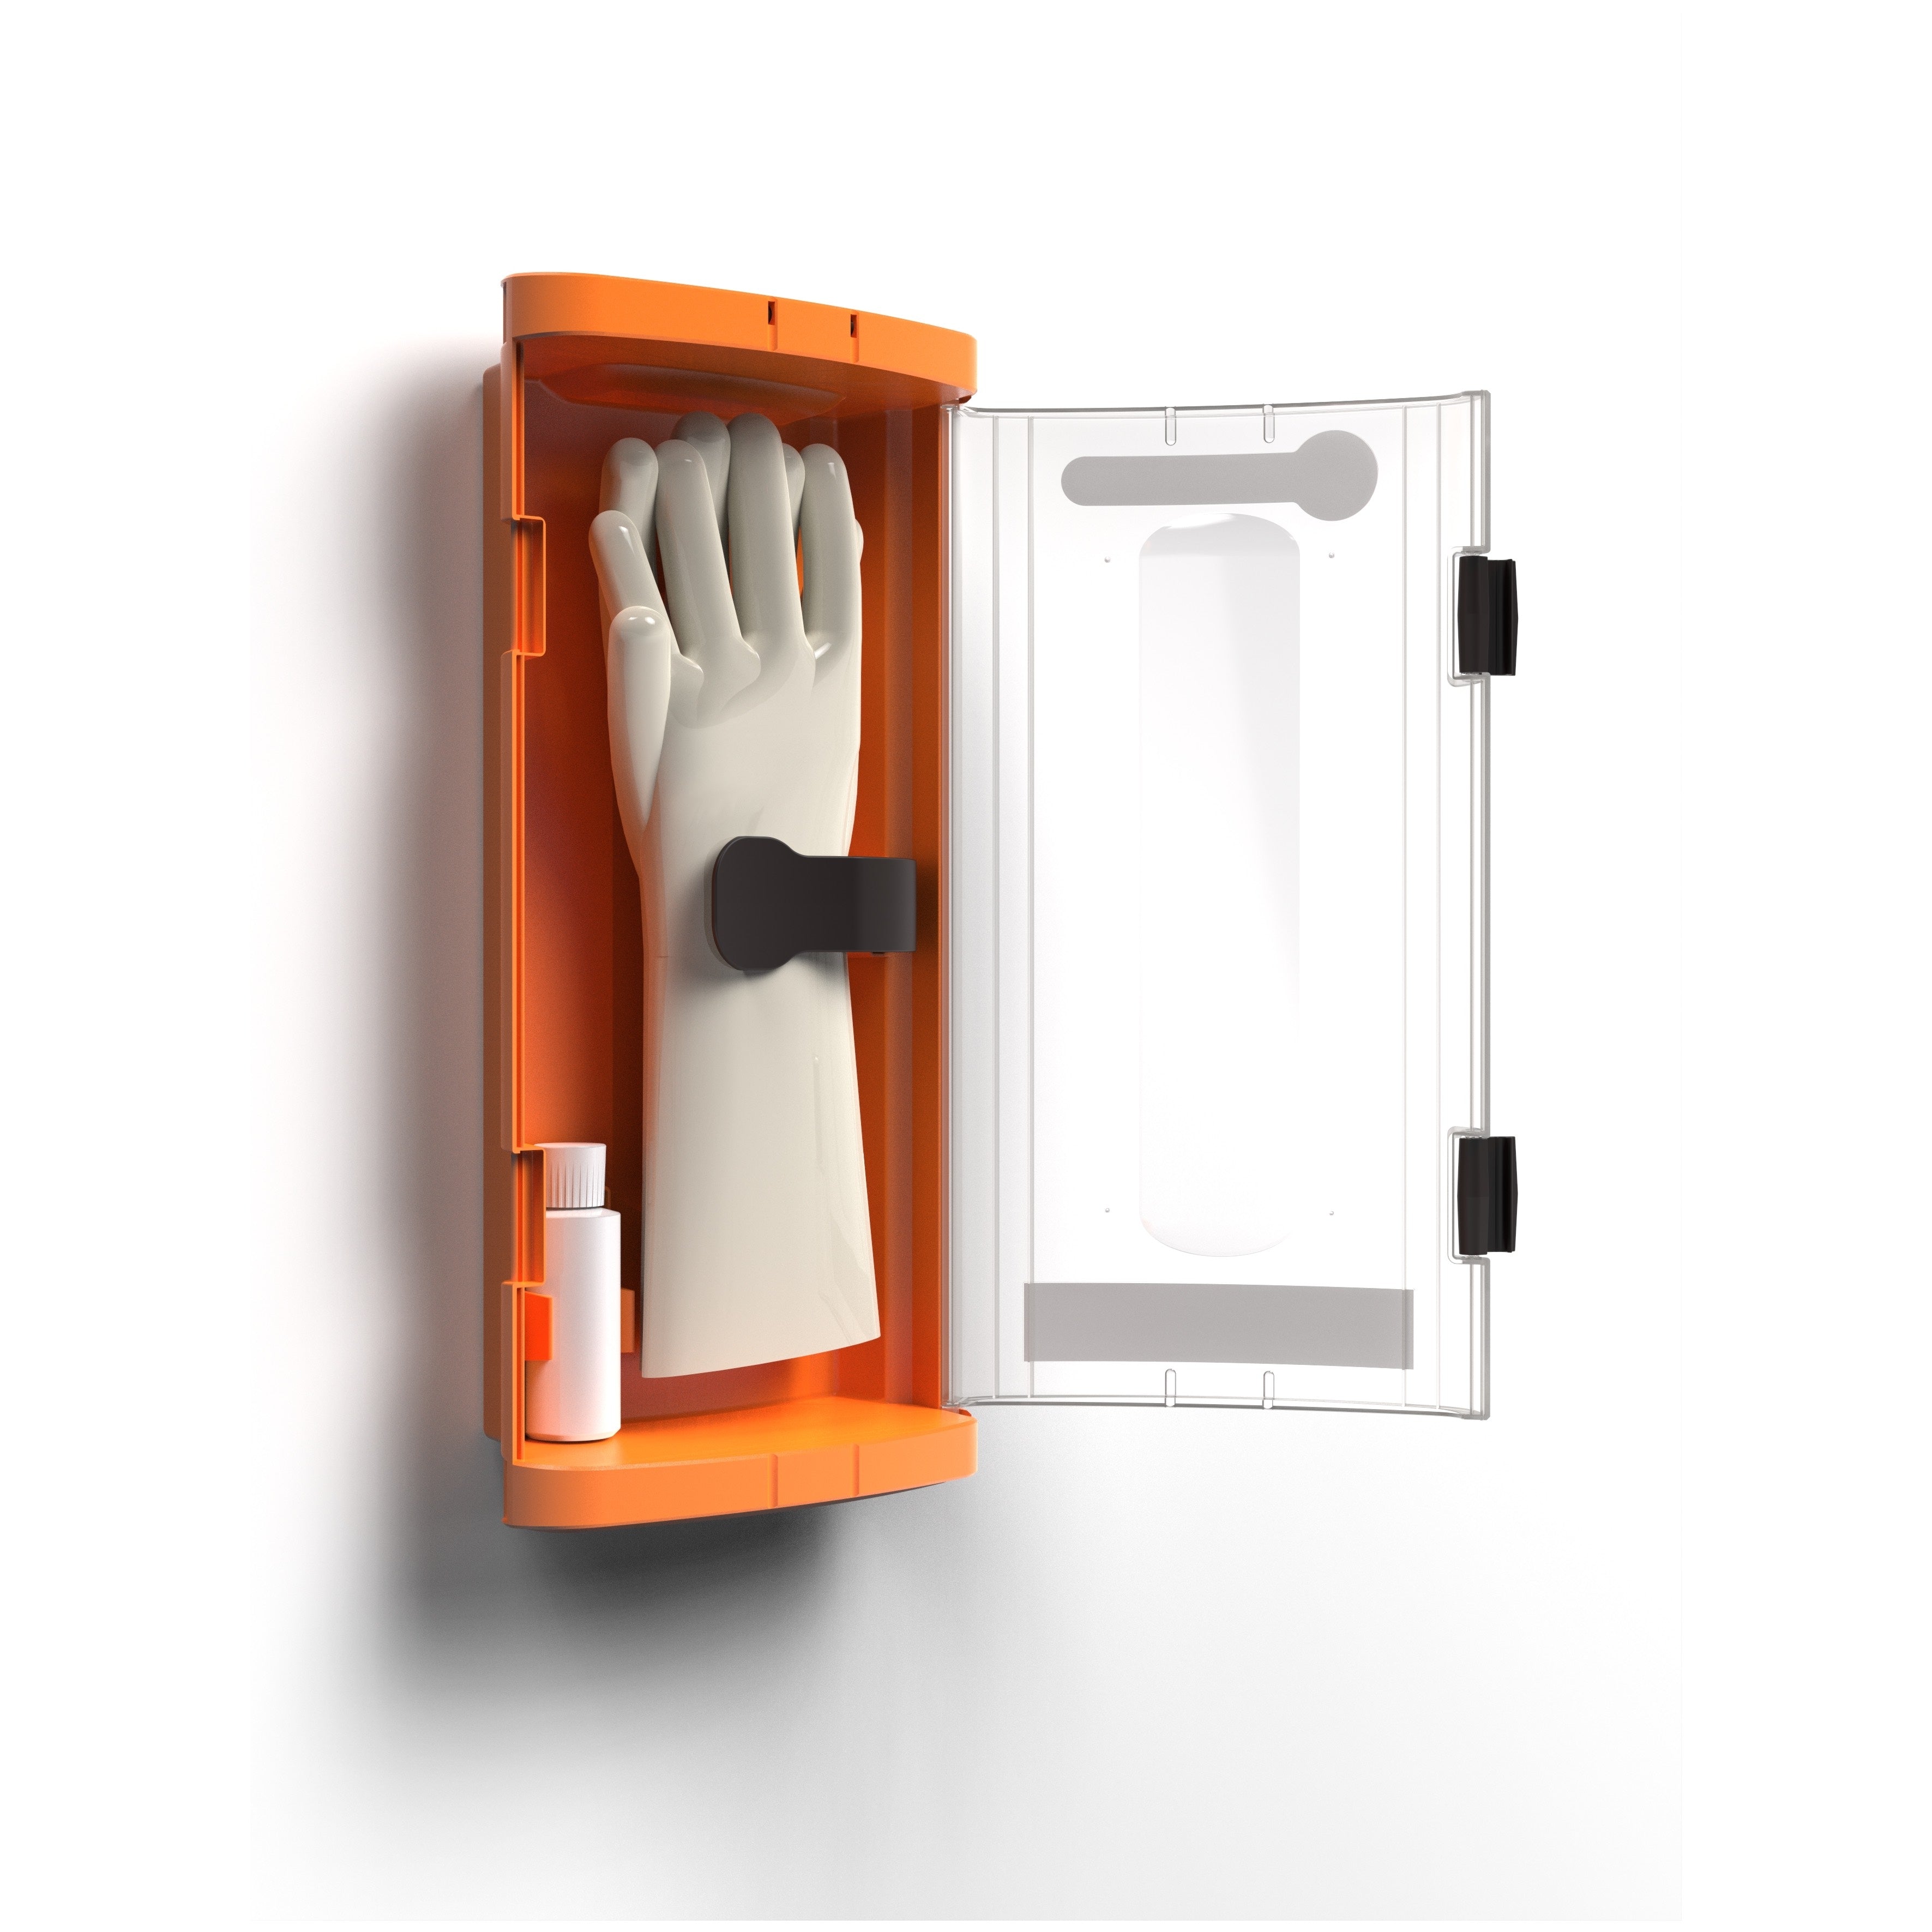 Sibille Insulating Glove Storage Case Plus Talcum Powder